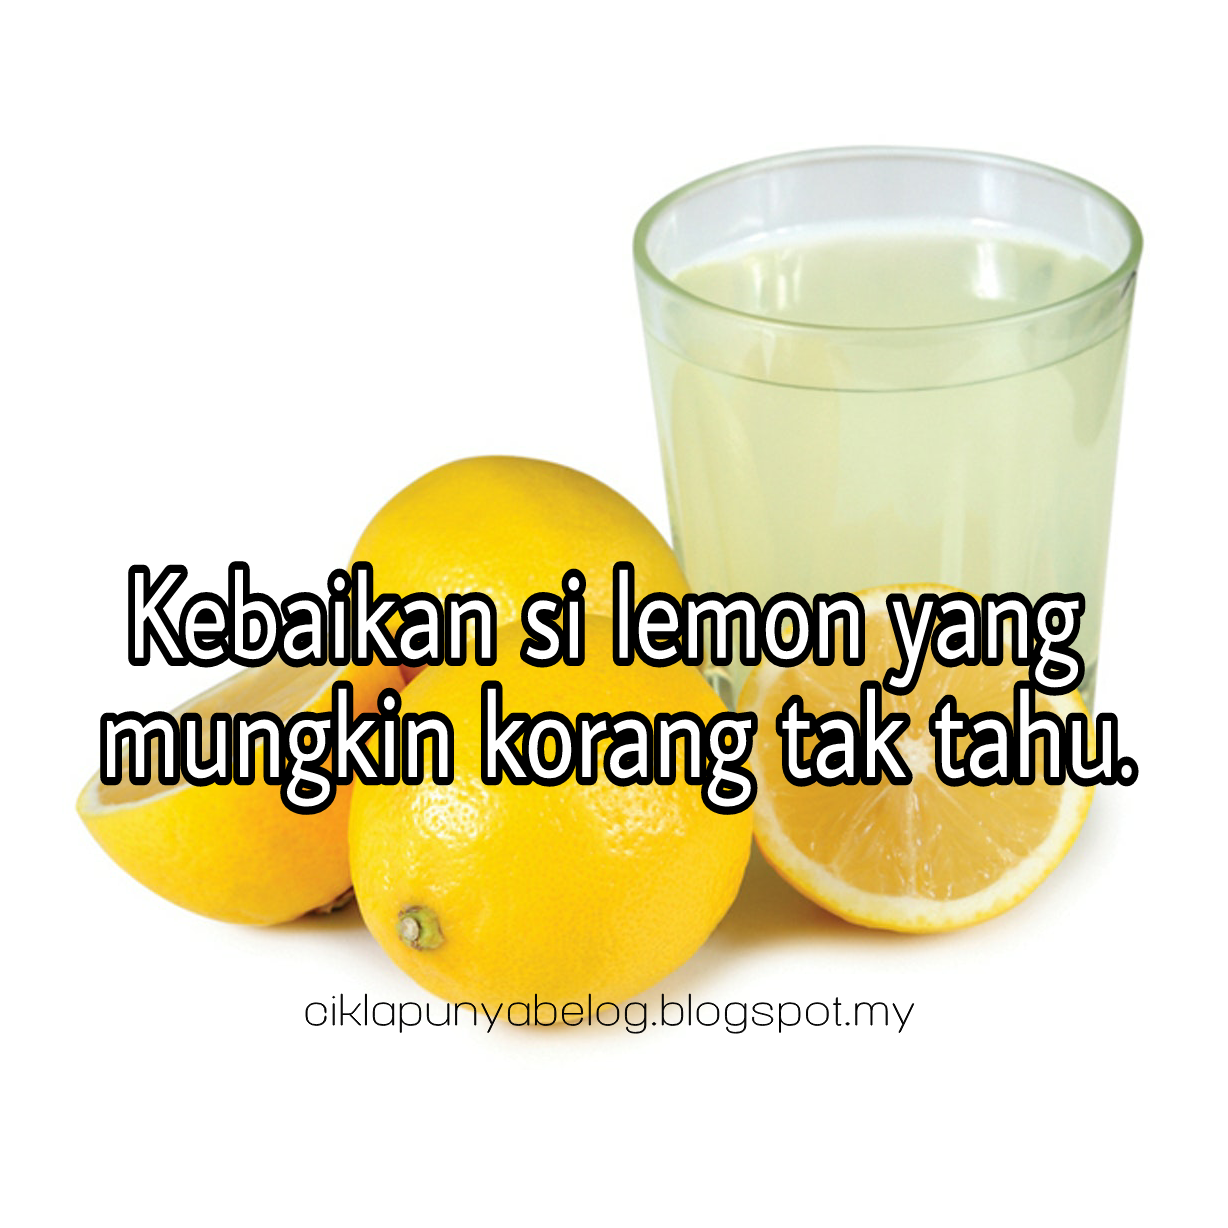 Kebaikan si lemon yang mungkin korang tak tahu.